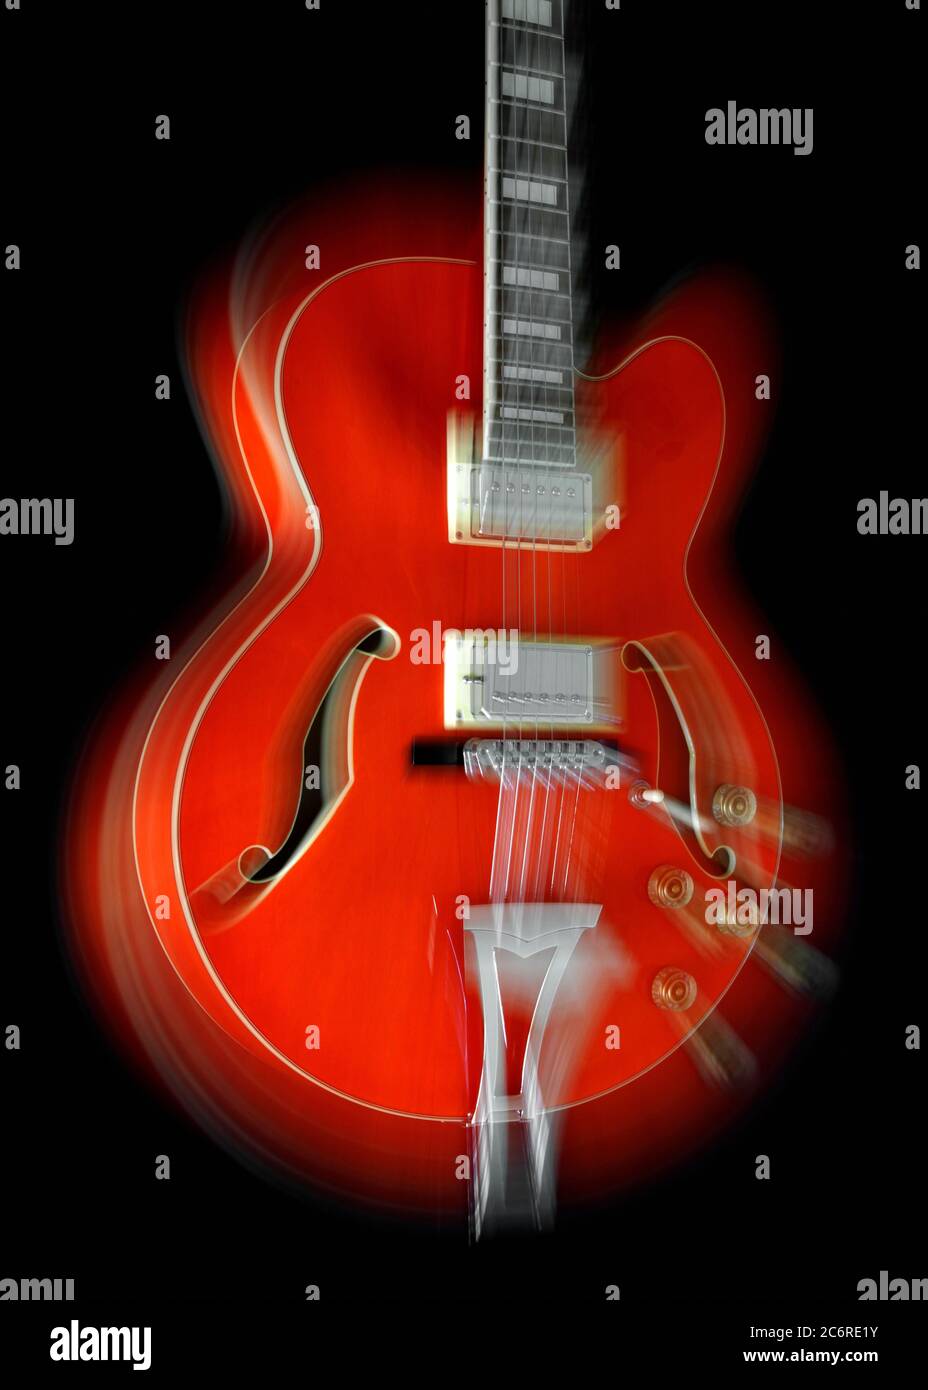 Longue exposition d'une guitare électrique Hollowbody Ibanez AF75 tout en  activant la fonction zoom donnant une apparence explosive Photo Stock -  Alamy